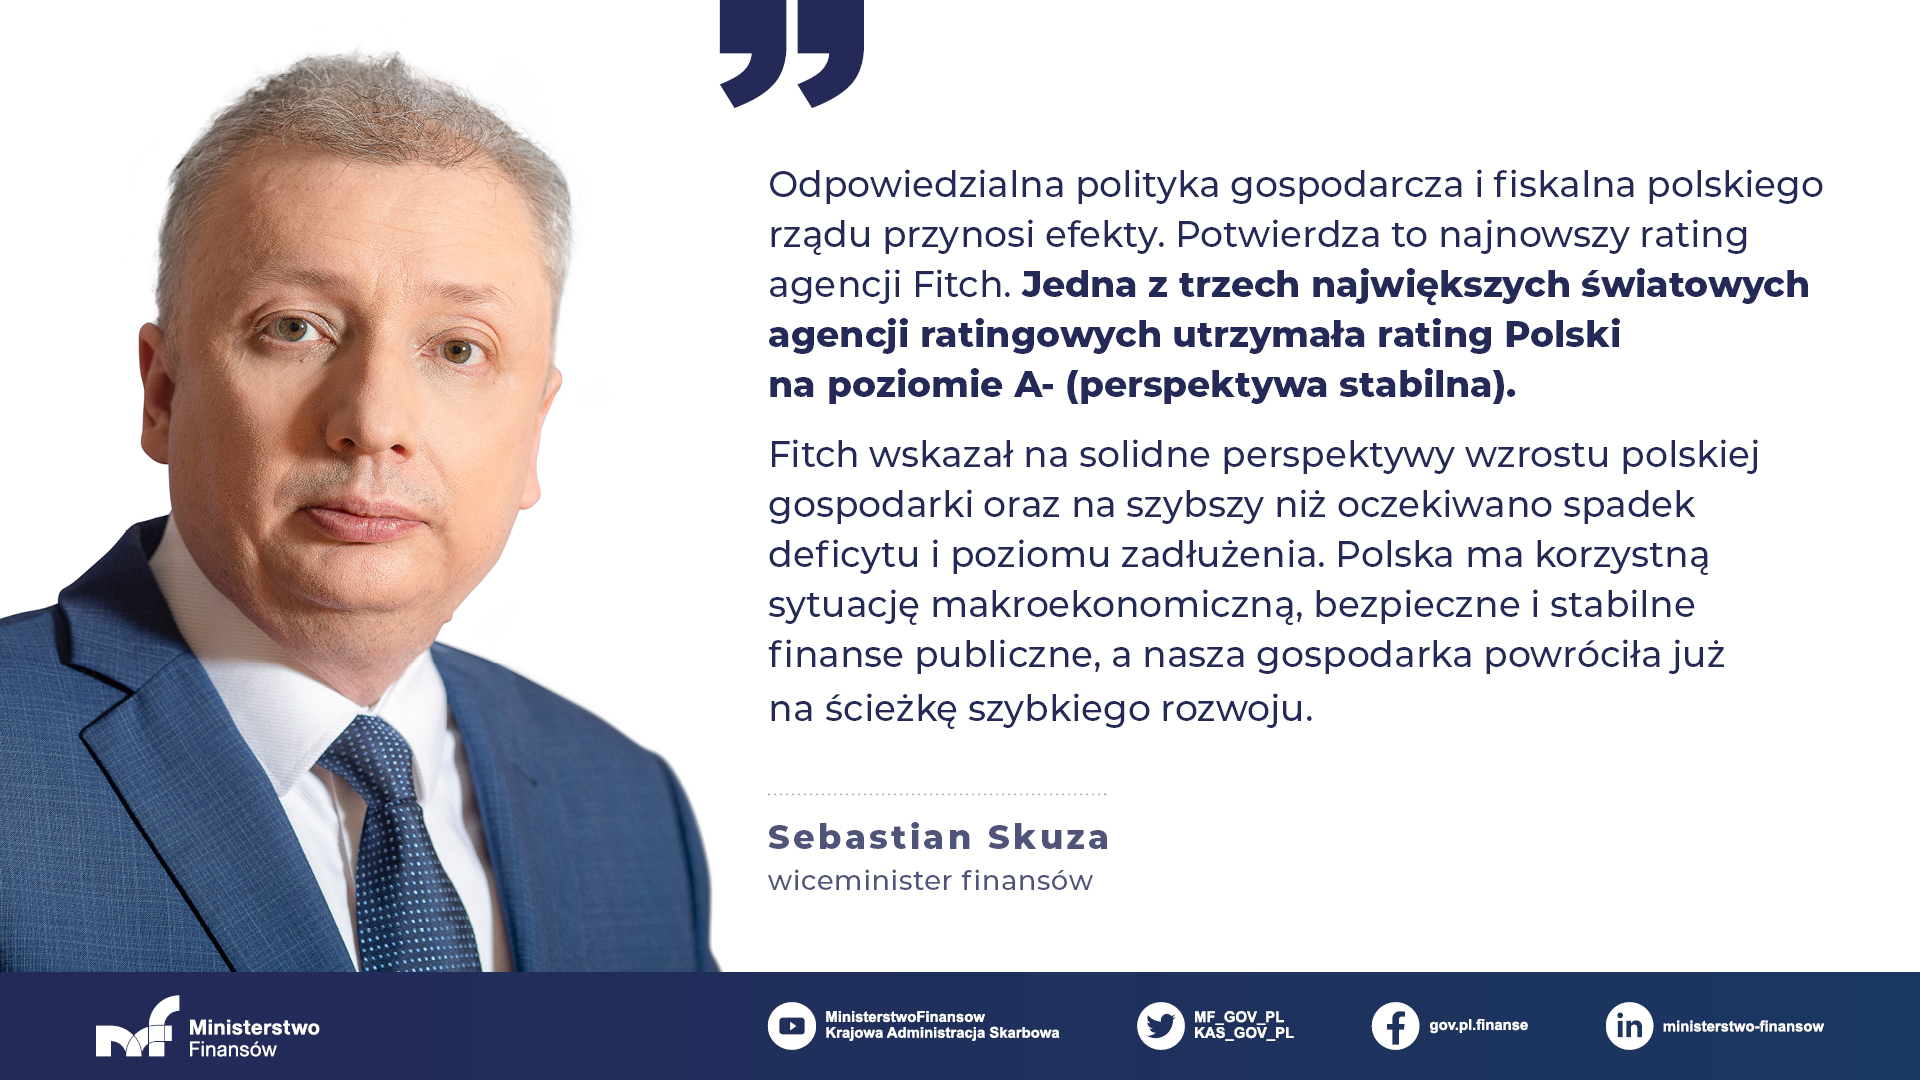 Wiceminister Sebastian Skuza o utrzymaniu ratingu Polski przez Fitch - Polska ma stabilne finanse publiczne, gospodarka wróciła na ścieżkę szybkiego rozwoju